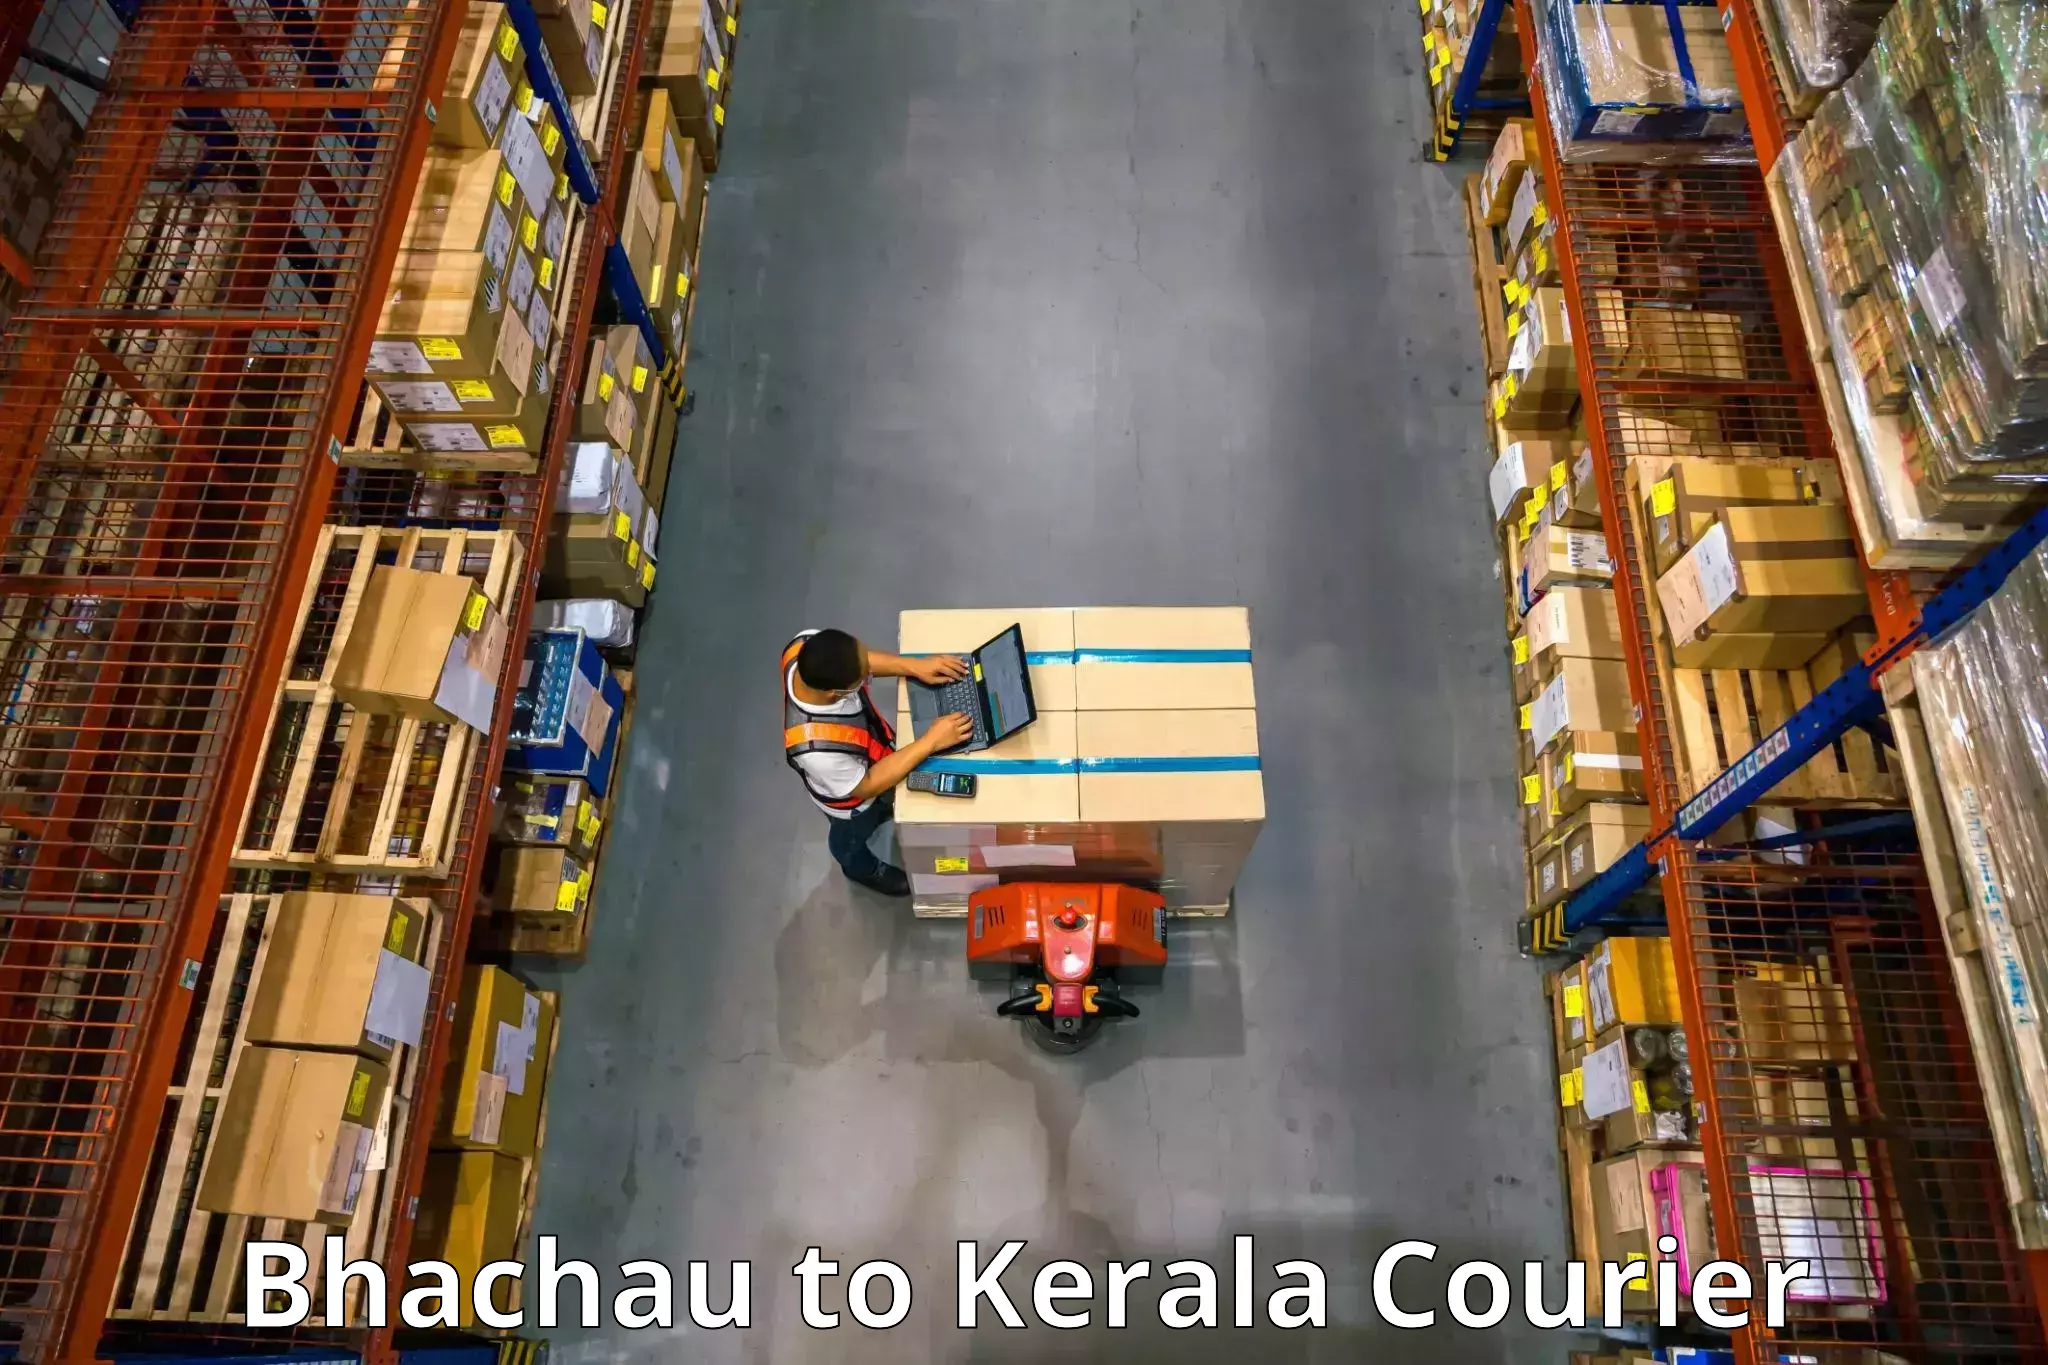 High-quality moving services Bhachau to Kochi